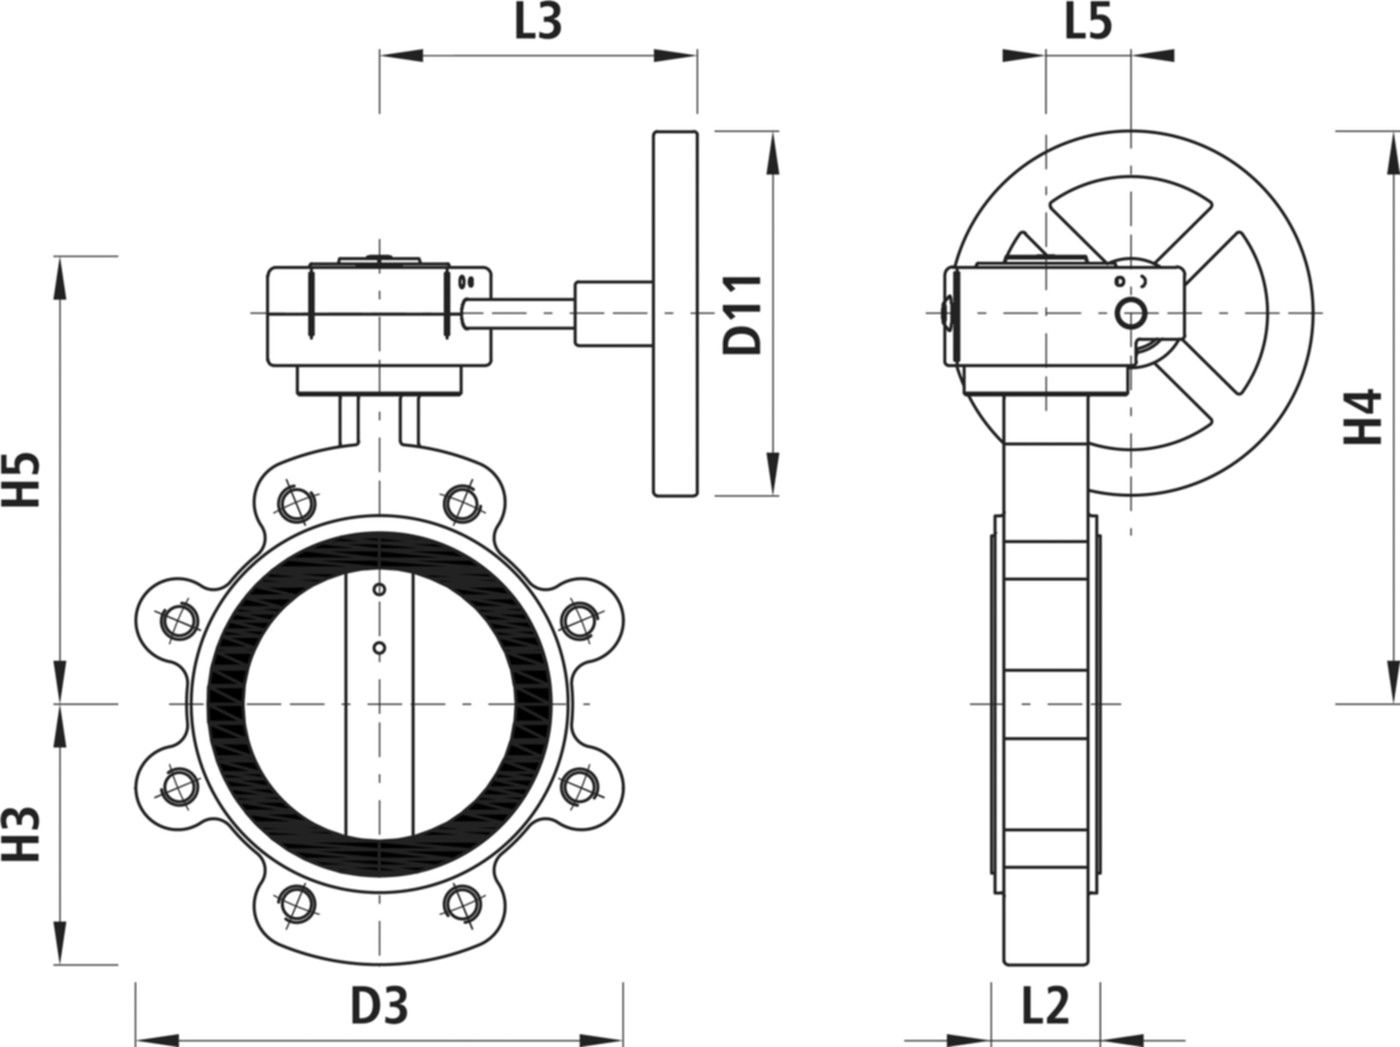 Absperrklappe mit Getriebe Typ LT 9937 für Gas DN 50 PN 16 - Hawle Absperrklappen